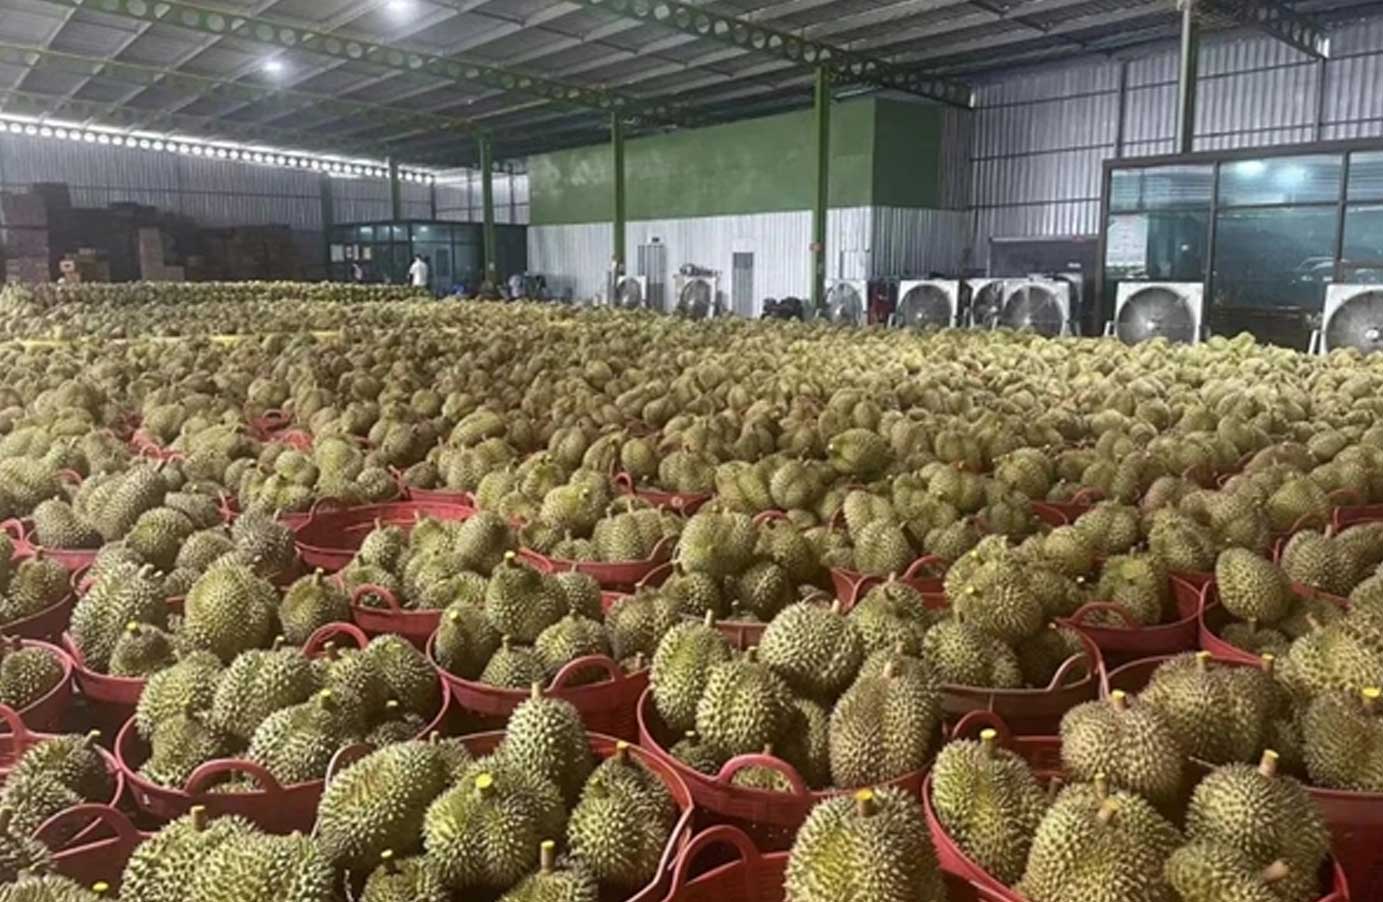 18吨泰国金枕榴莲入境鄂尔多斯机场  顺丰执飞今年首班国际水果包机